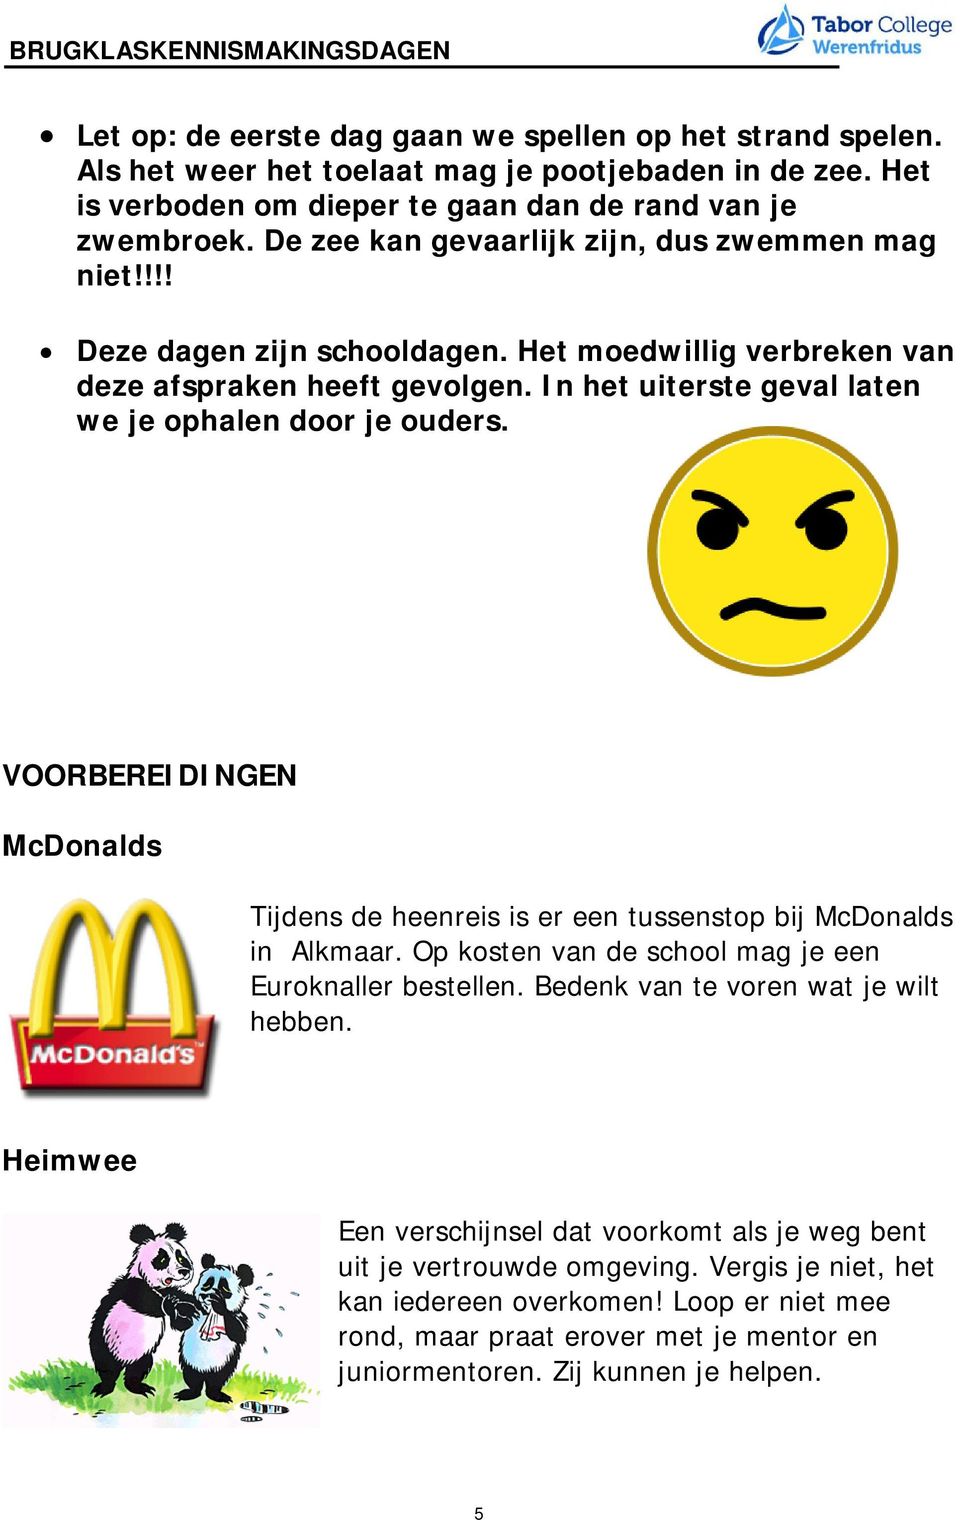 VOORBEREIDINGEN McDonalds Tijdens de heenreis is er een tussenstop bij McDonalds in Alkmaar. Op kosten van de school mag je een Euroknaller bestellen. Bedenk van te voren wat je wilt hebben.